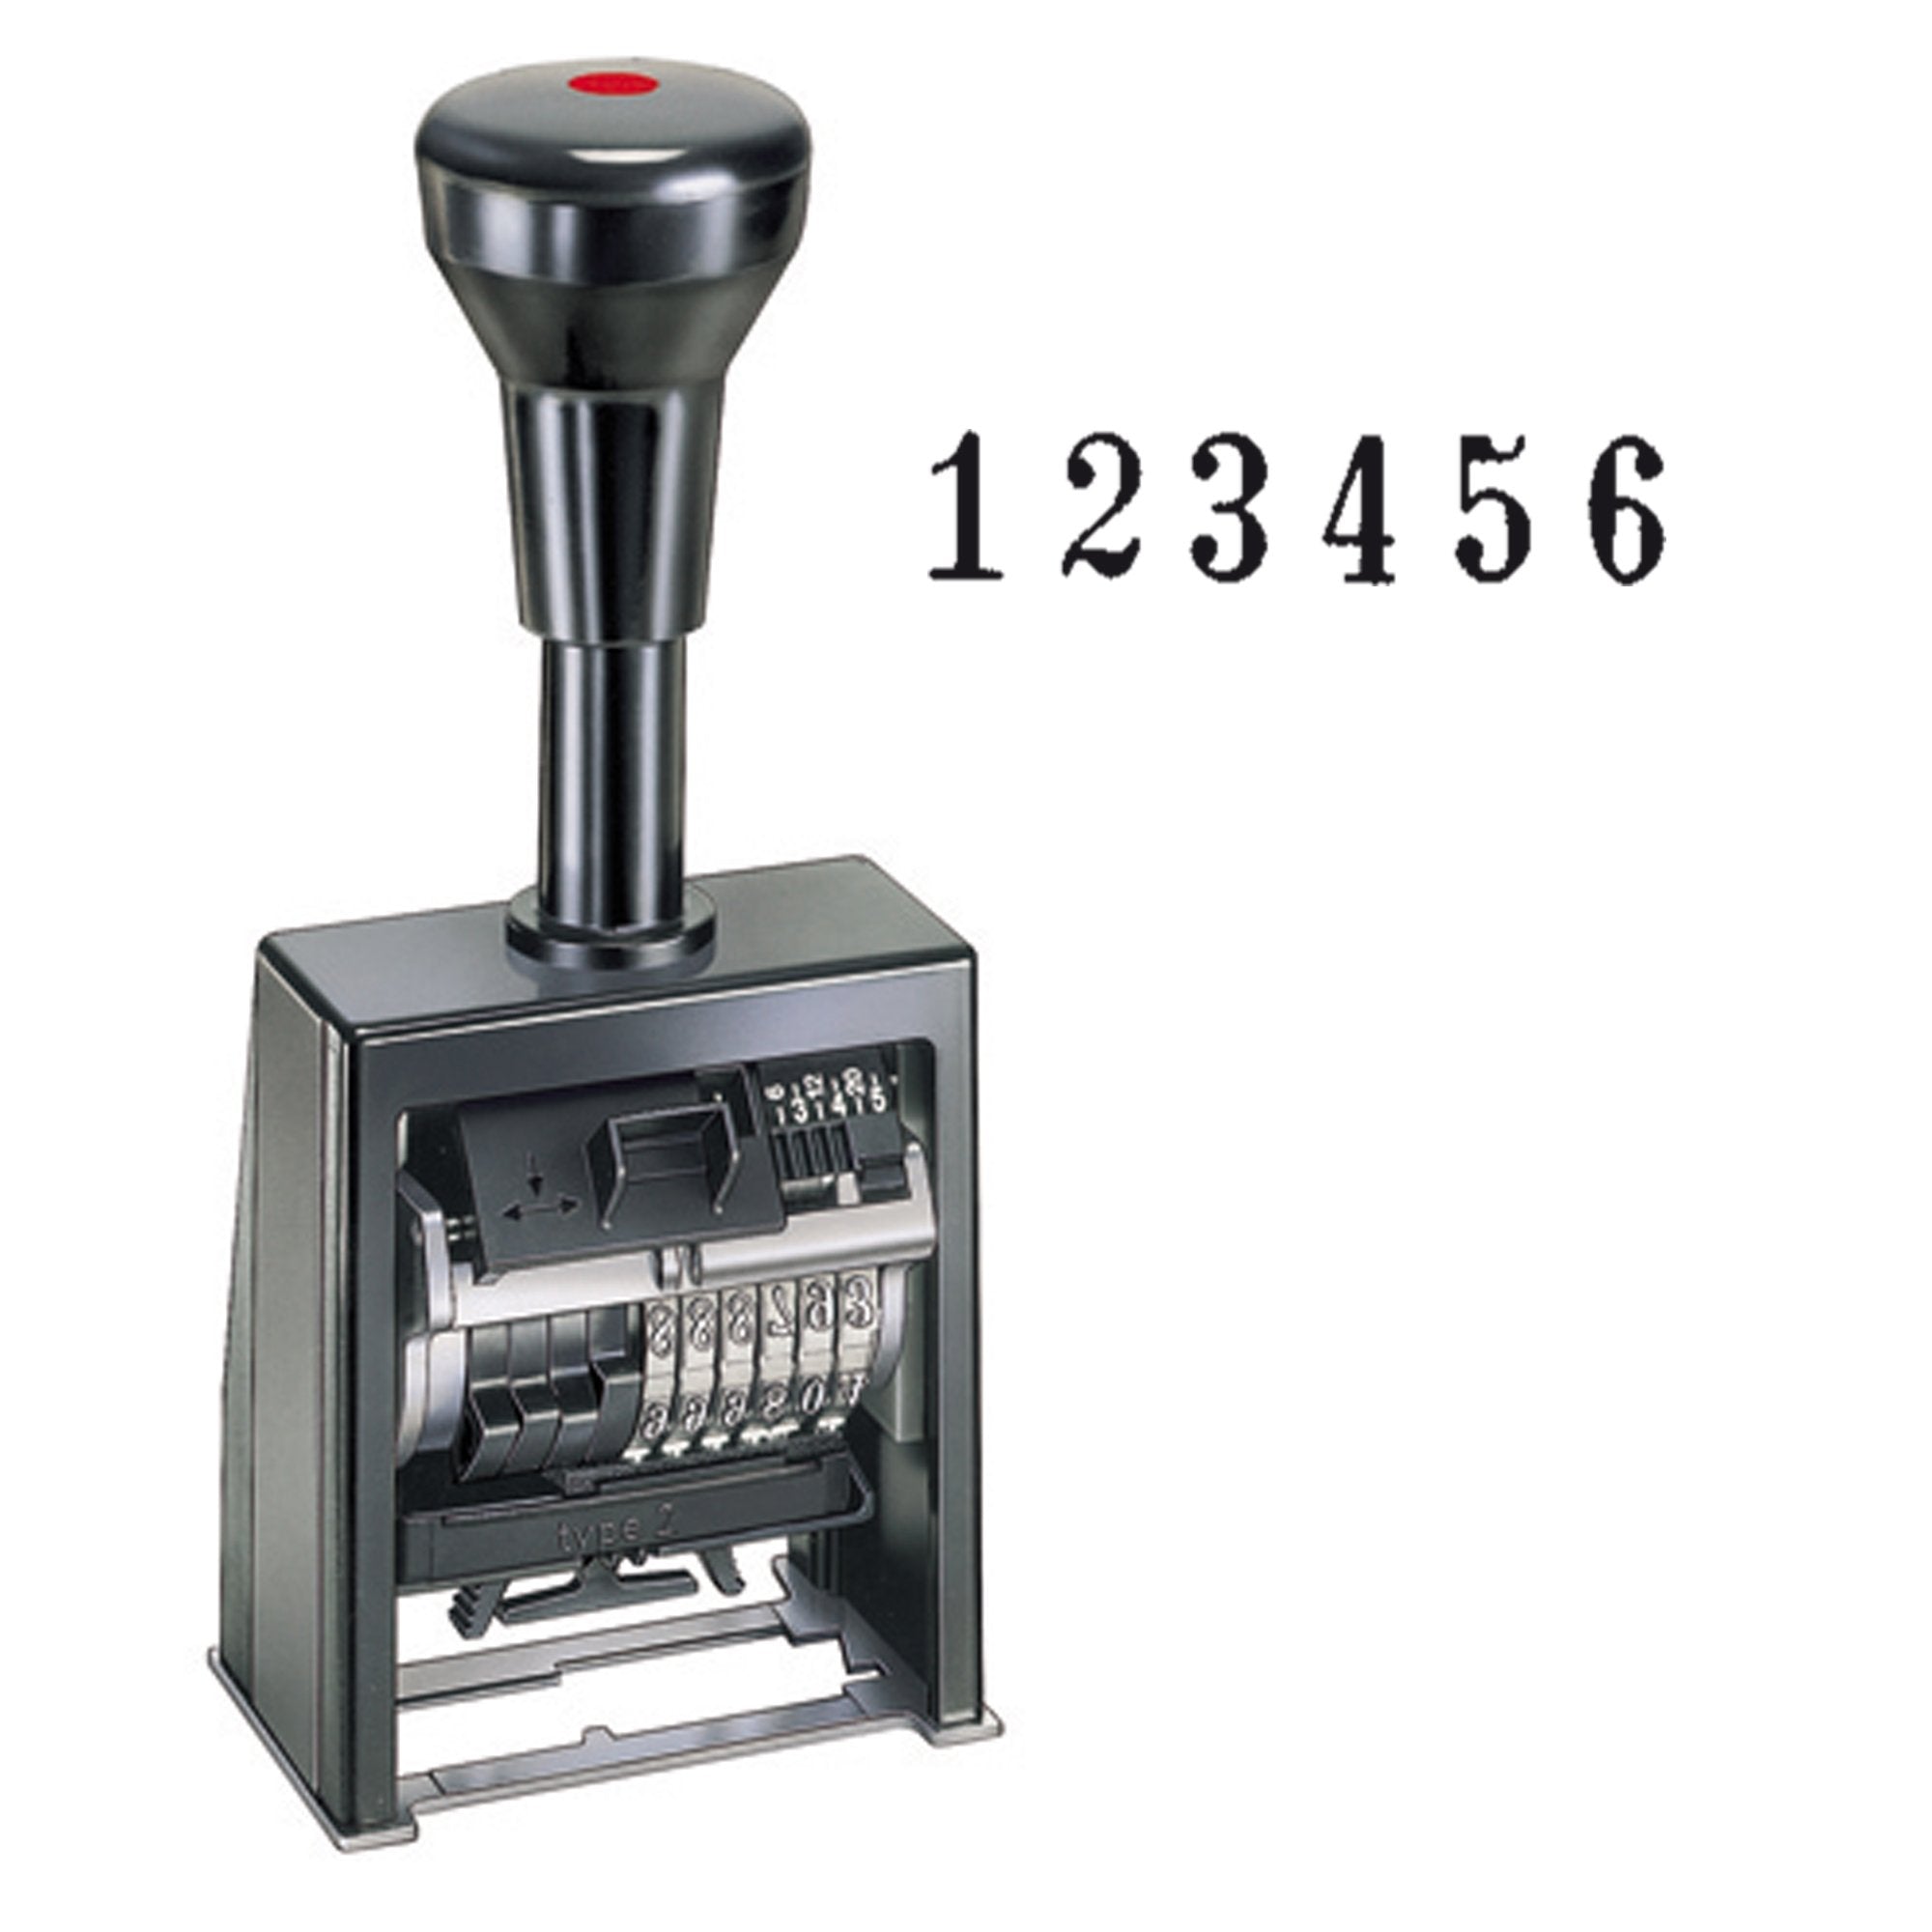 reiner-timbro-numeratore-autoinchiostrante-automatico-b6k-6colonne-4-5mm